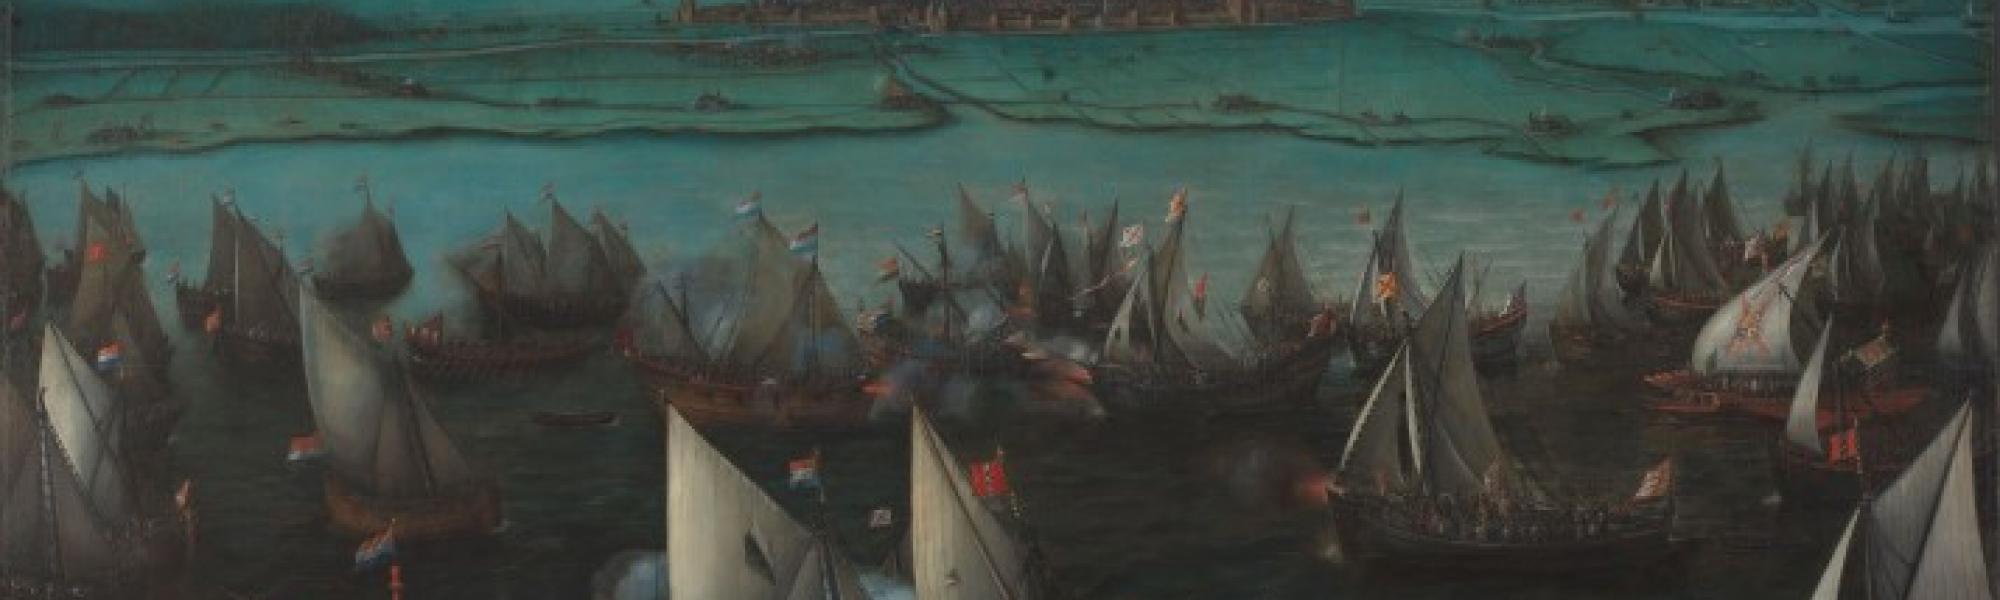 Schilderij van Zeeslag tussen Spaanse Vloot en Geuzen